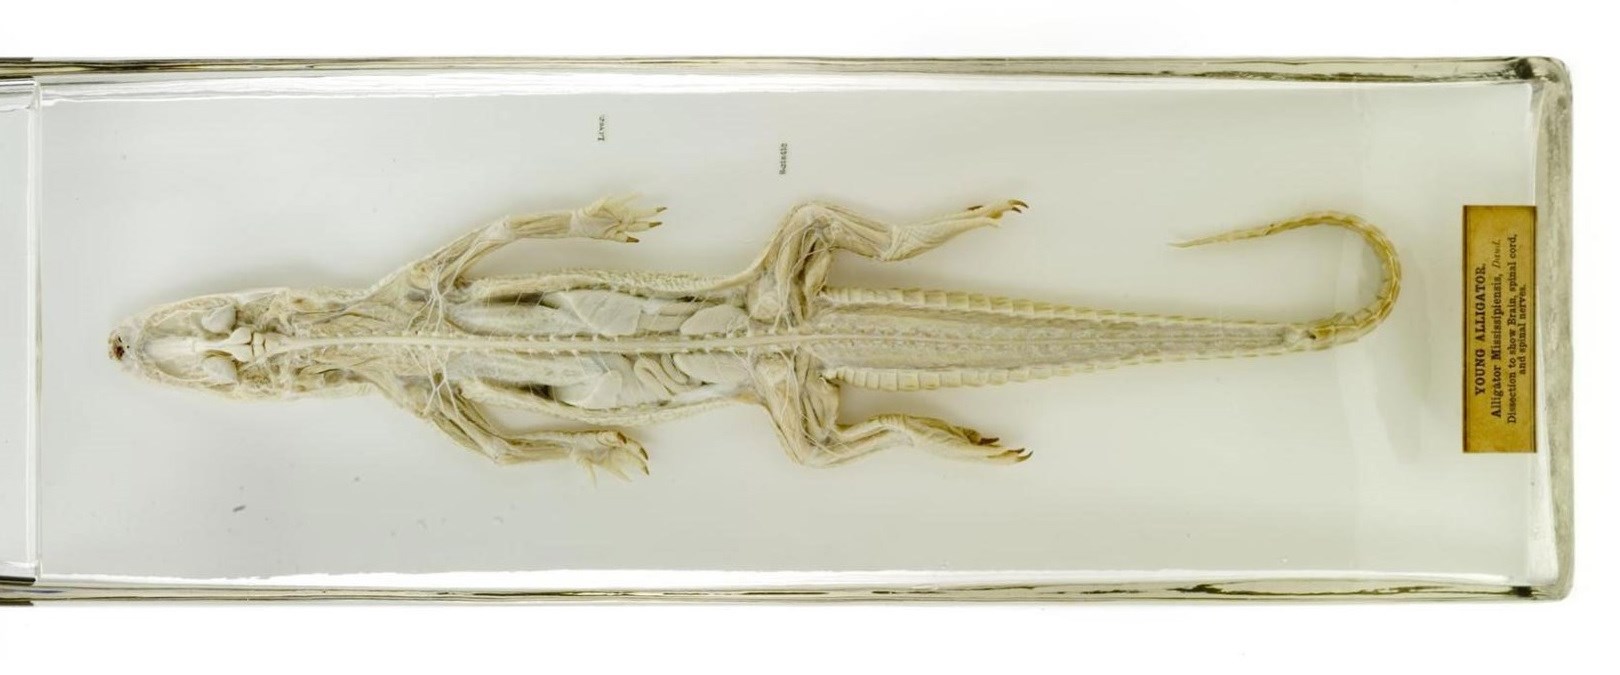 Alligator Specimen 1